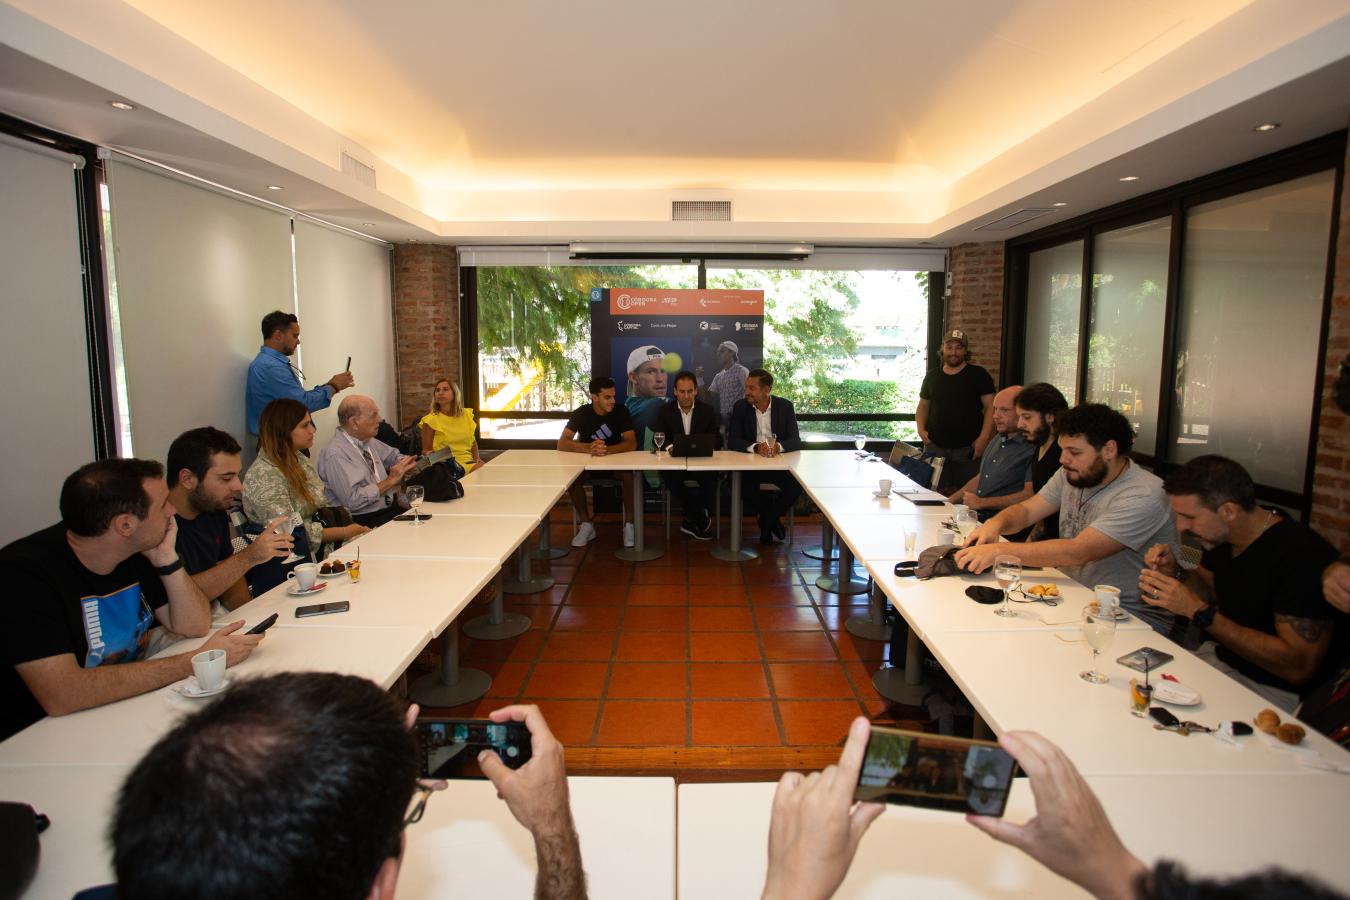 Imagen El lanzamiento del Córdoba Open y la presencia de los periodistas.